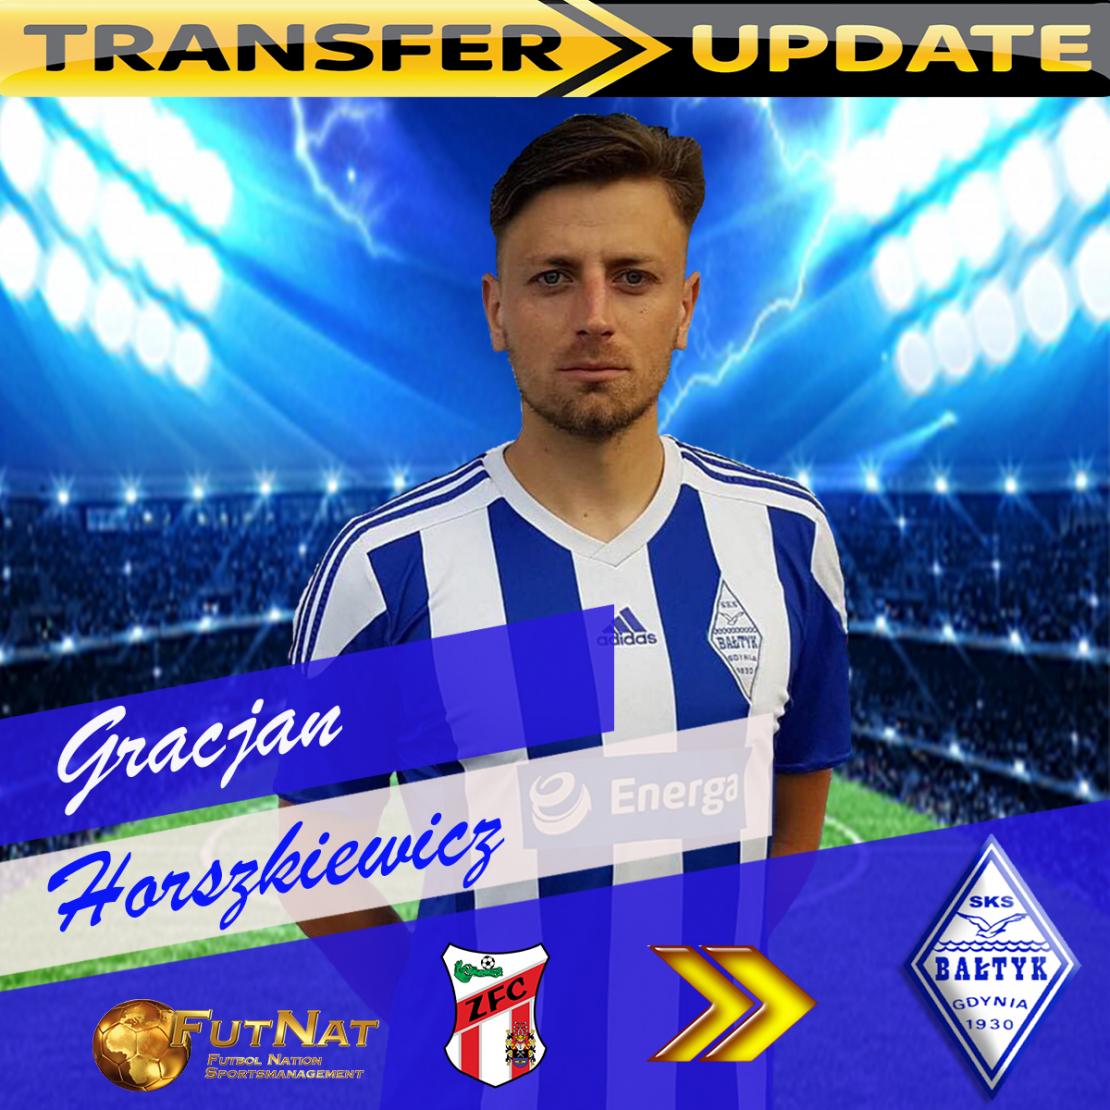 Gracjan Horoszkiewicz transfer to SKS Bałtyku Gdynia